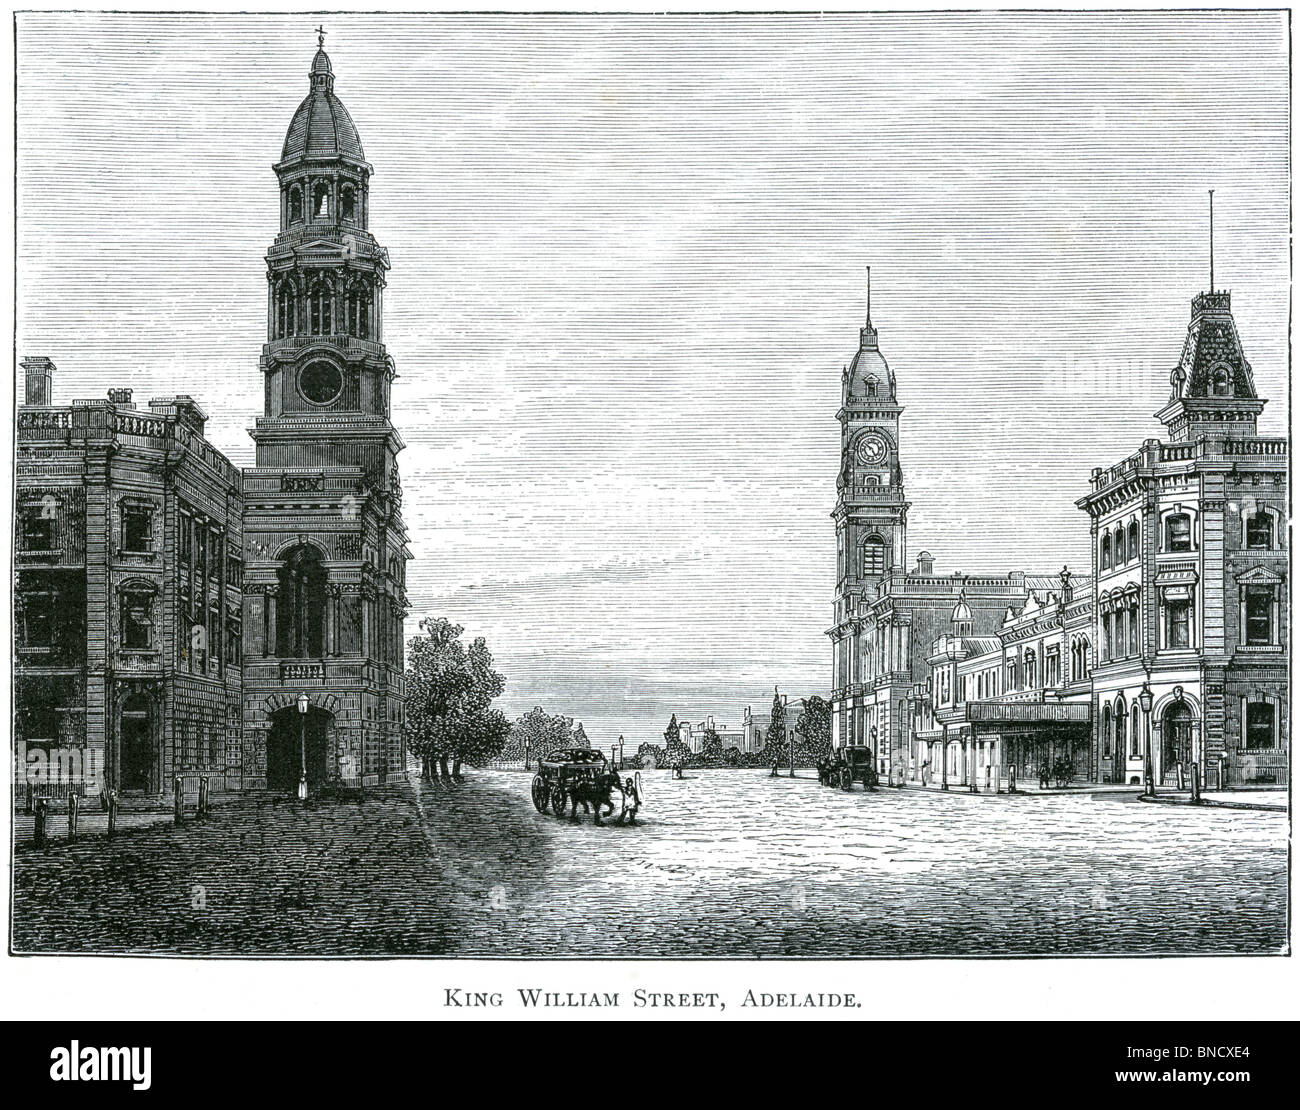 Una incisione di King William Street Adelaide, Australia del Sud - pubblicata in un libro stampato in 1886. Foto Stock